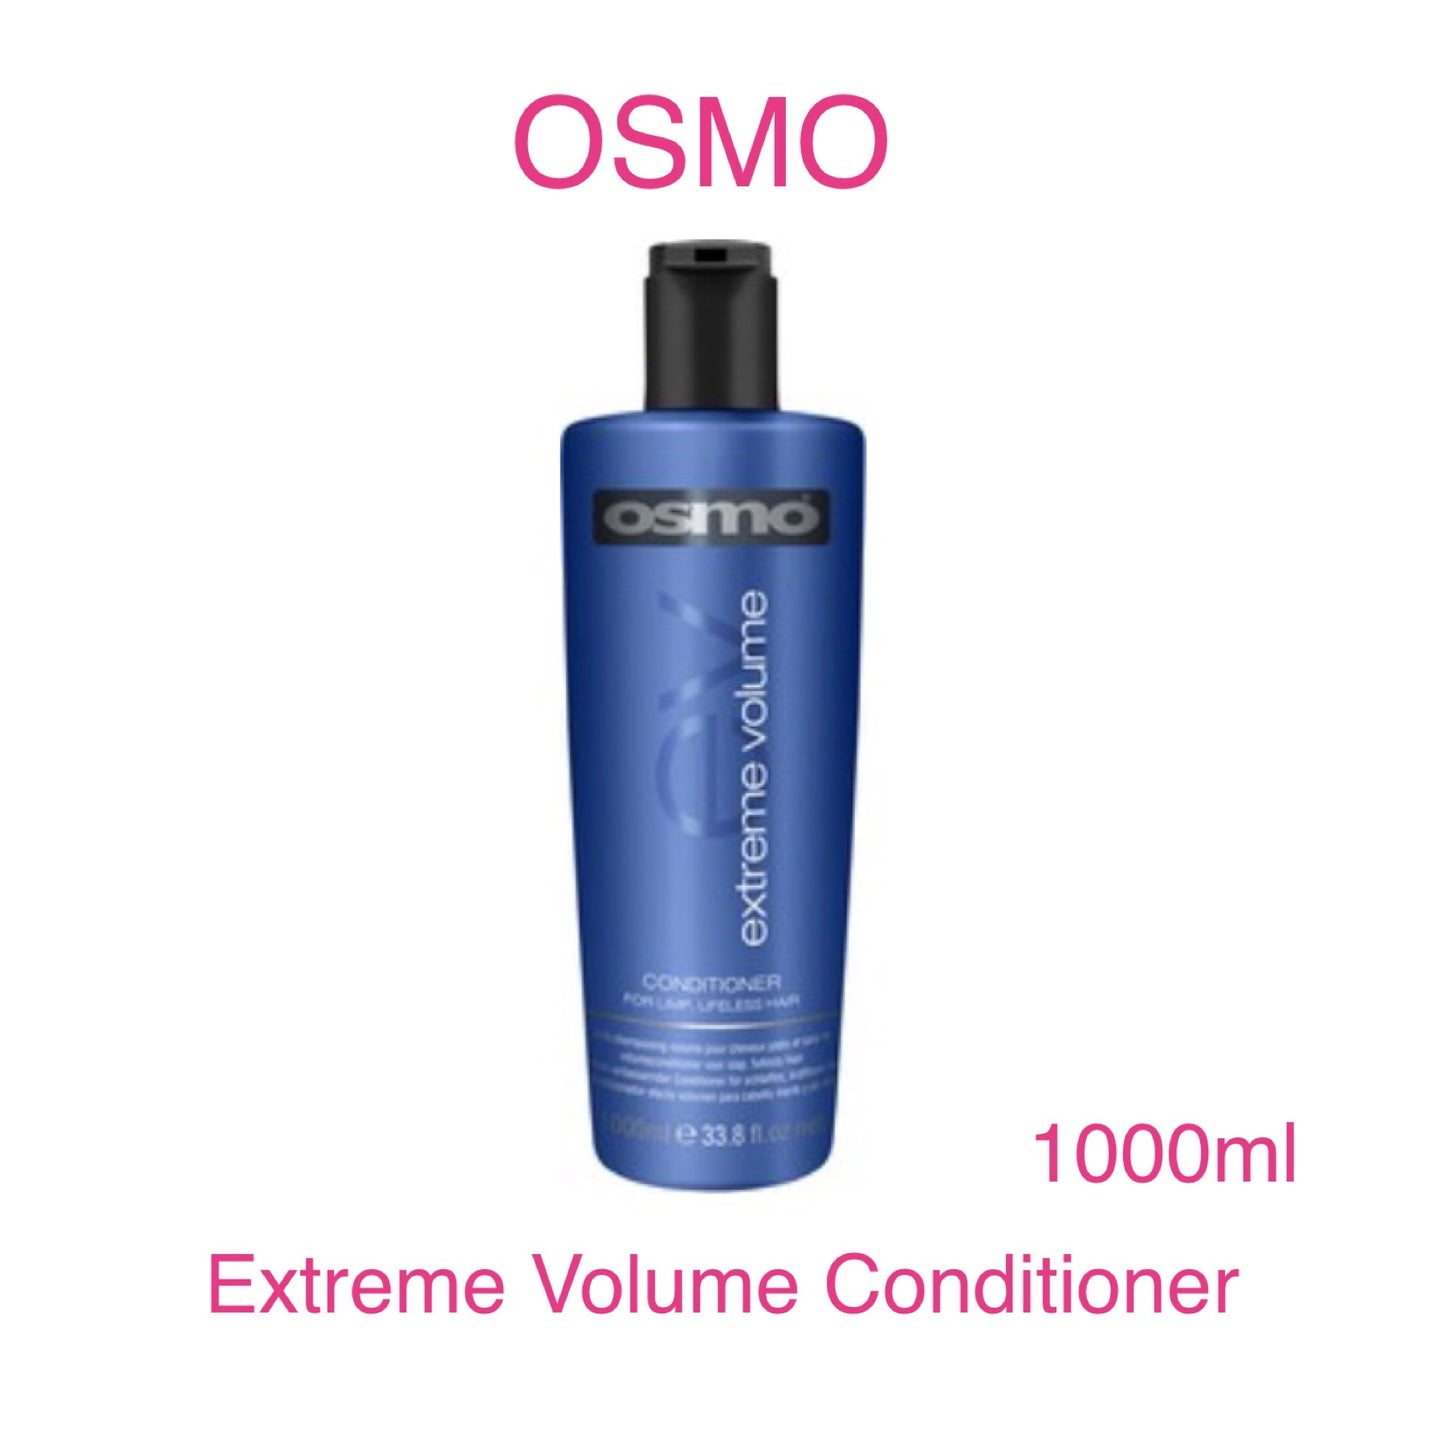 Osmo Extreme Volume Conditioner